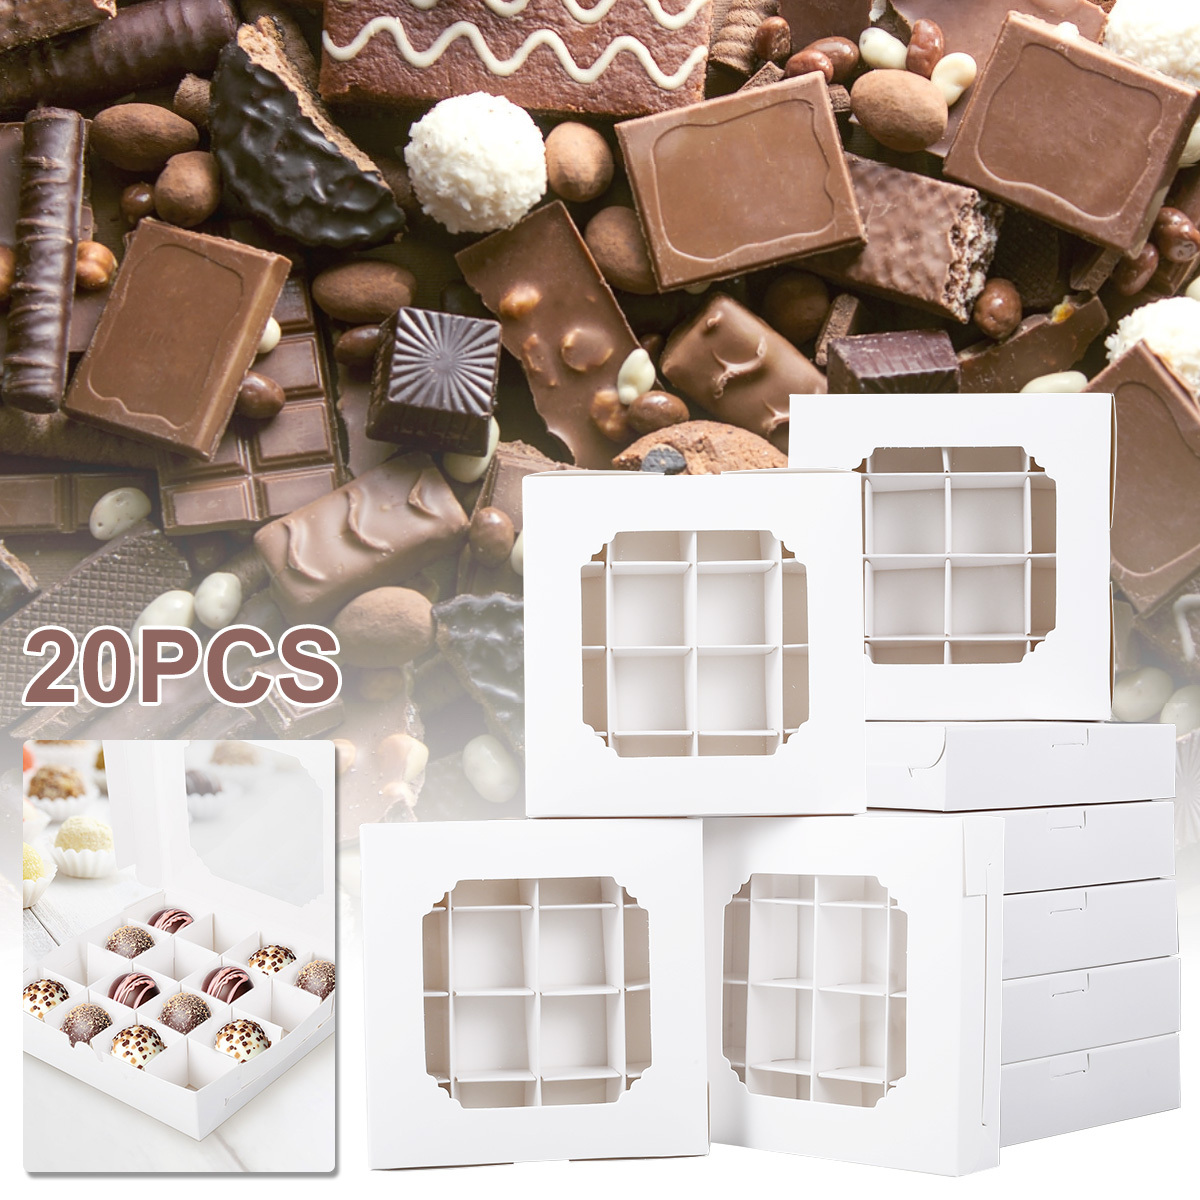 CELEBRATIONS Assortiment de confiseries au chocolat boîte